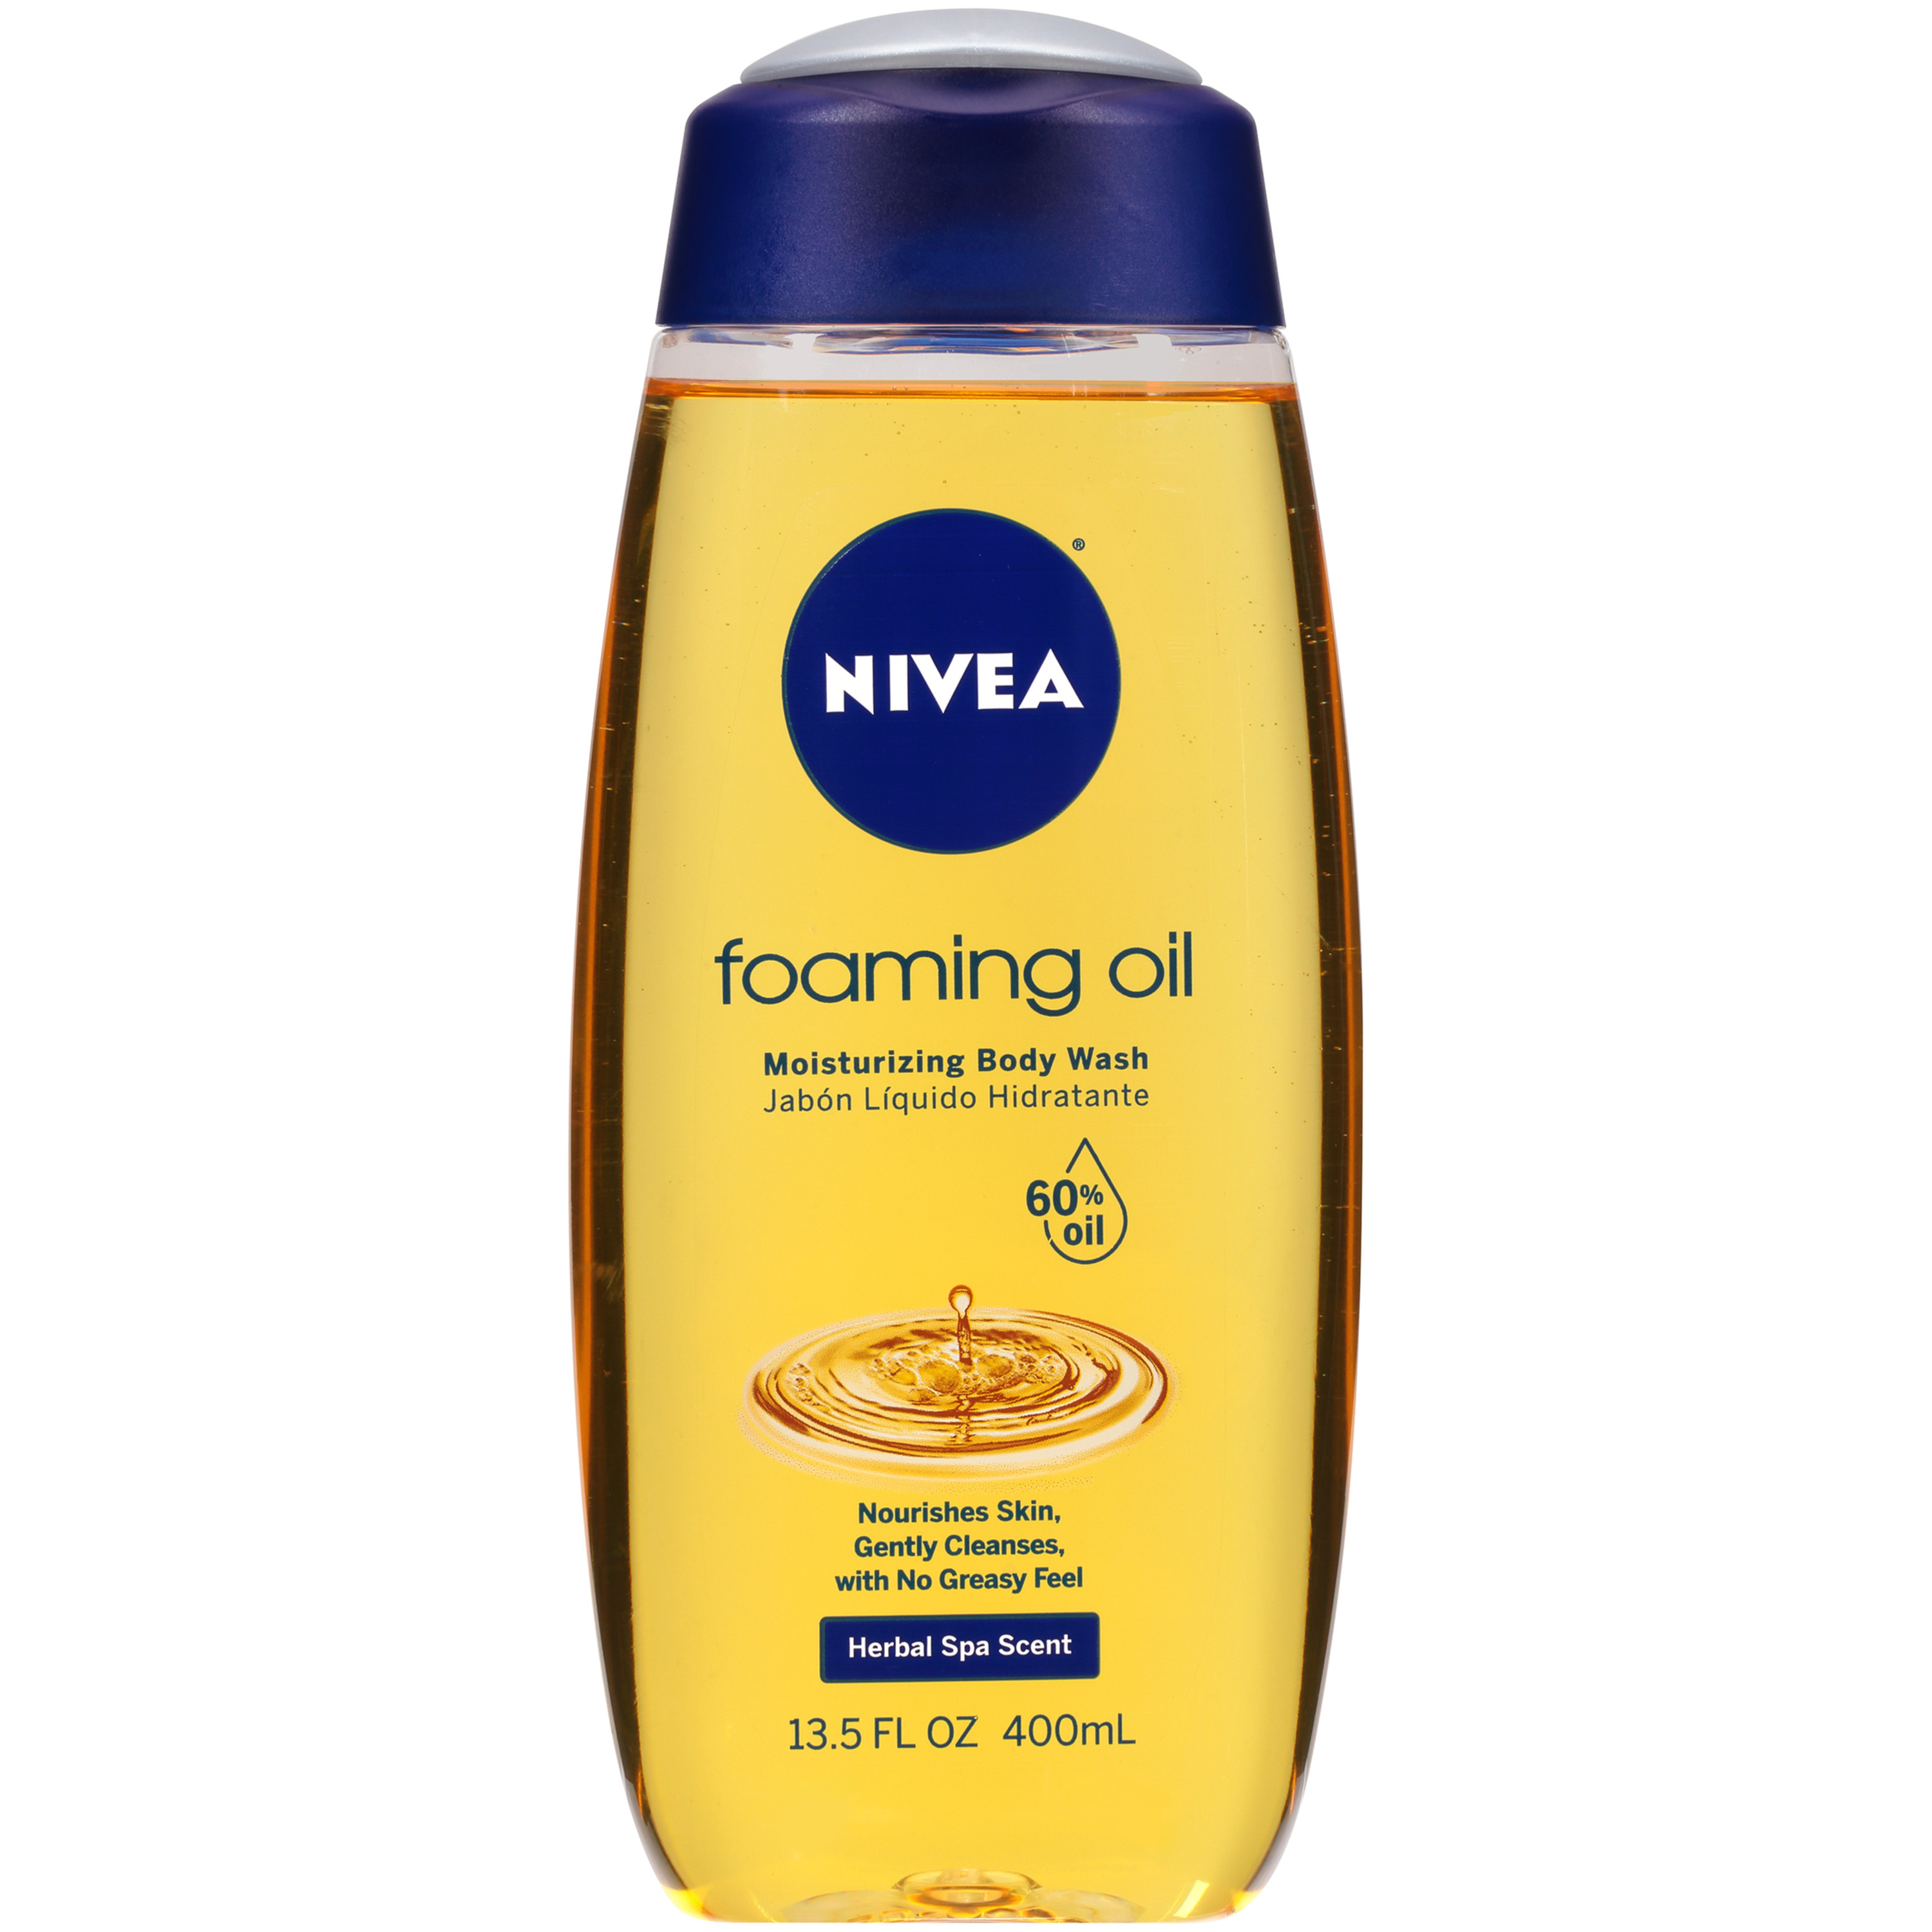 NIVEA Foaming Oil Moisturizing Body Wash 13.5 oz. Bottle - image 1 of 3